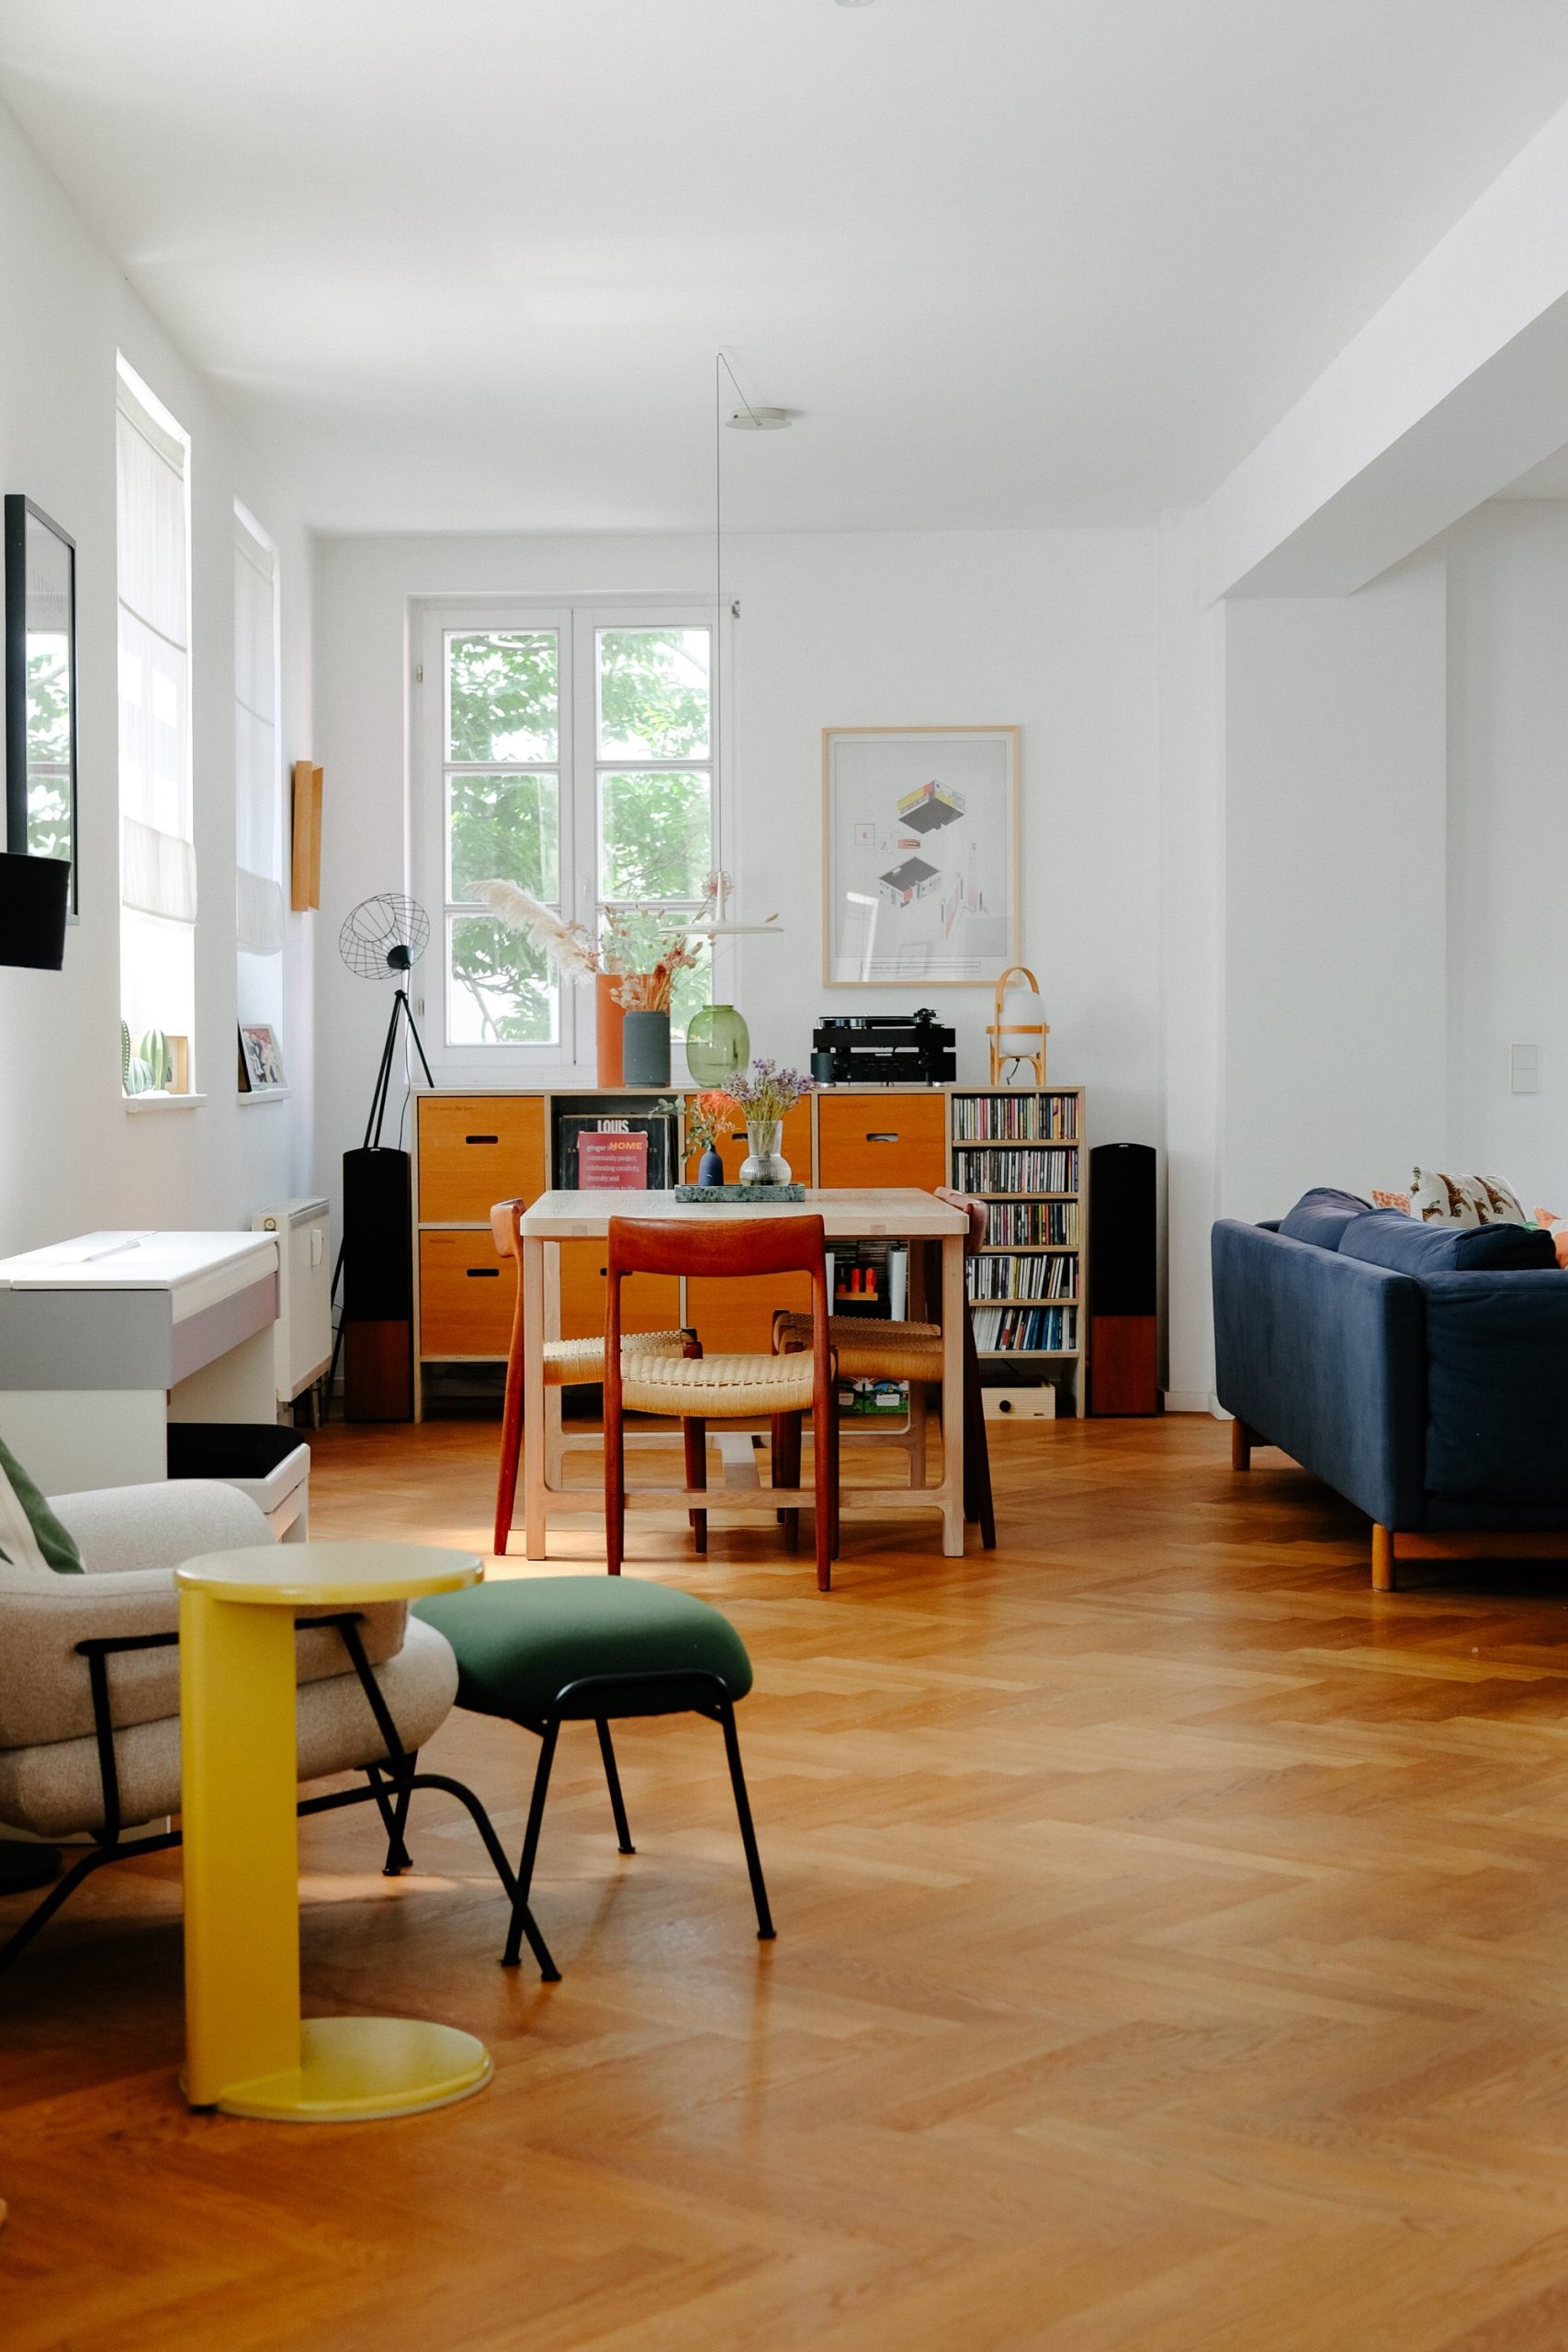 Wohnzimmer eines Familienhauses mit maßgefertigten Möbeln in angenehmen Farben, einschließlich Esstisch und Stühlen im skandinavischen Stil.